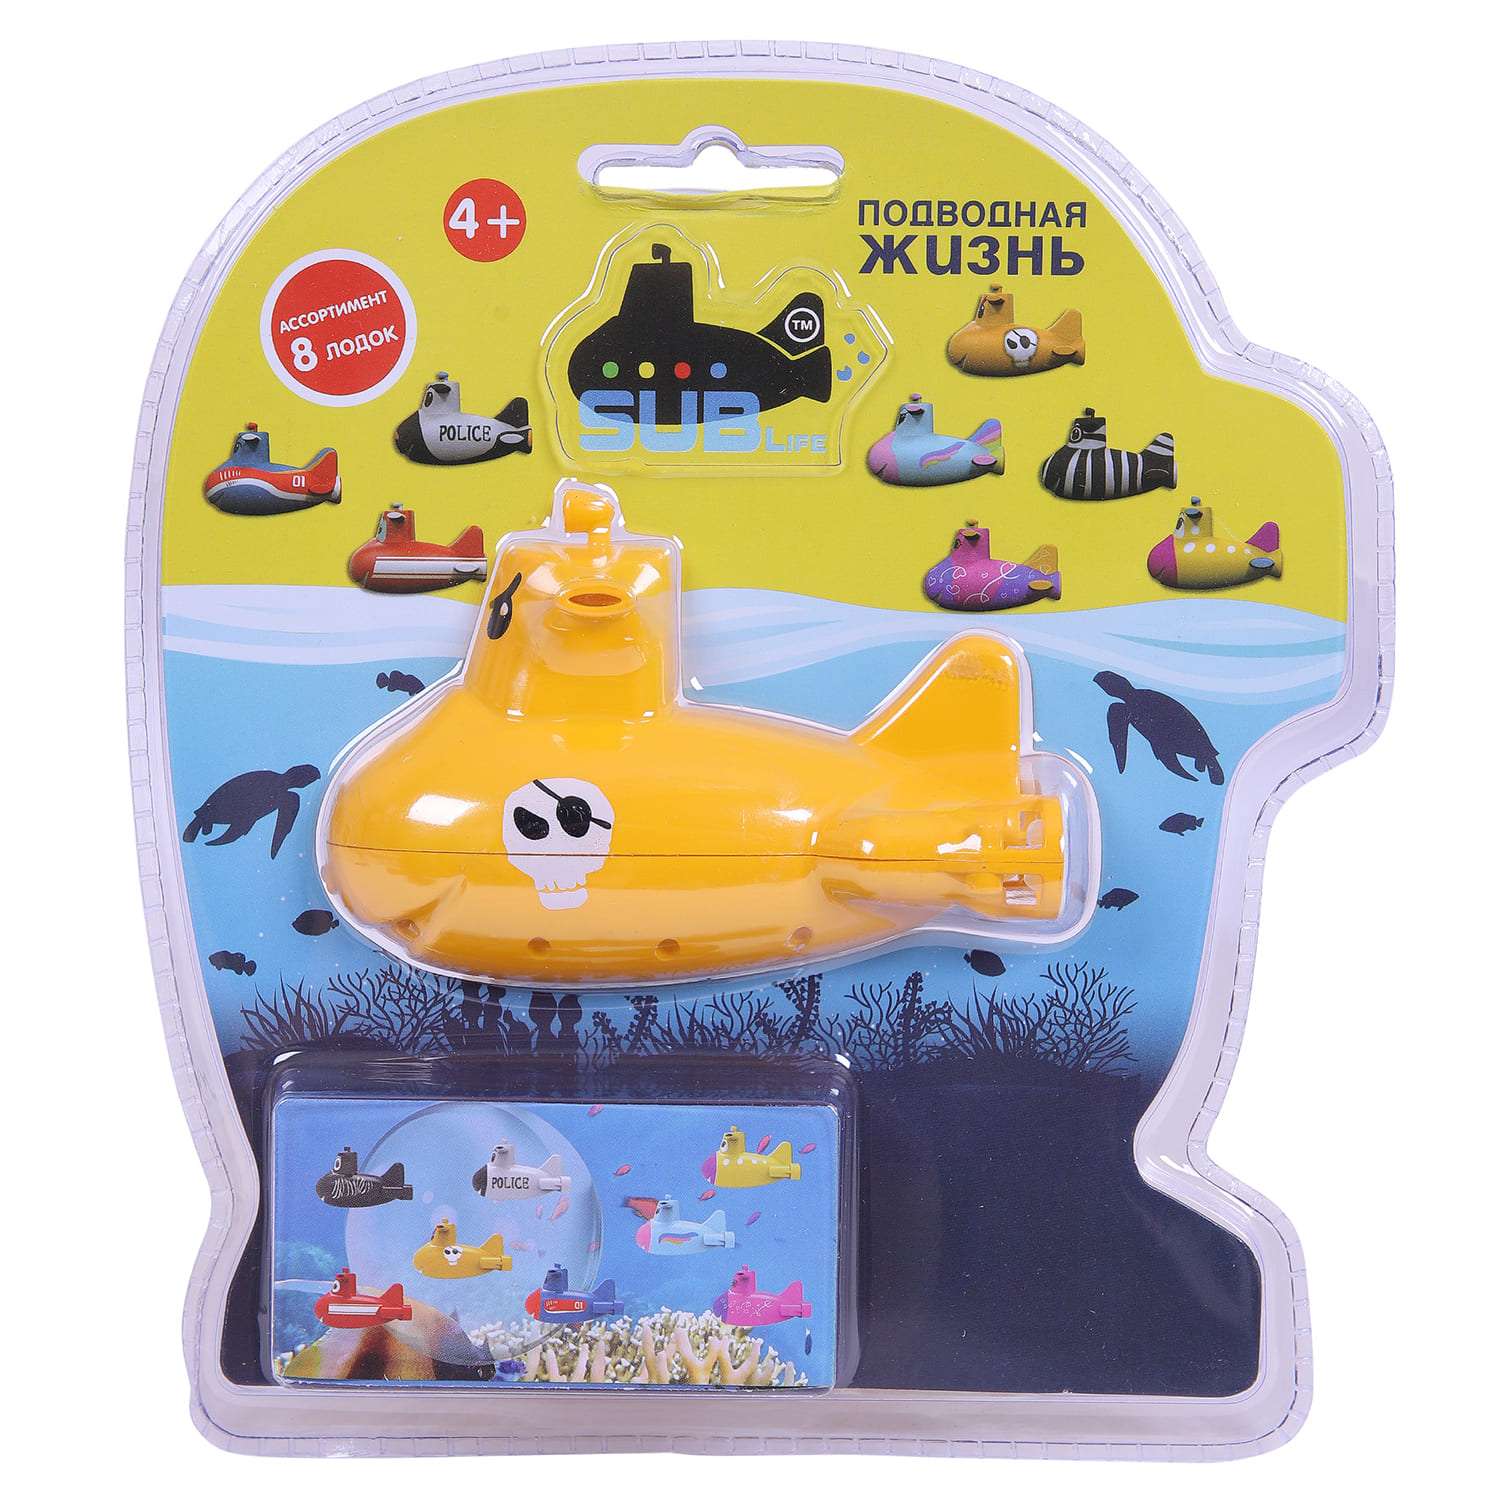 Игрушка радиоуправляемая ABtoys Подводная лодка SUBlife Рокк желтая - фото 2